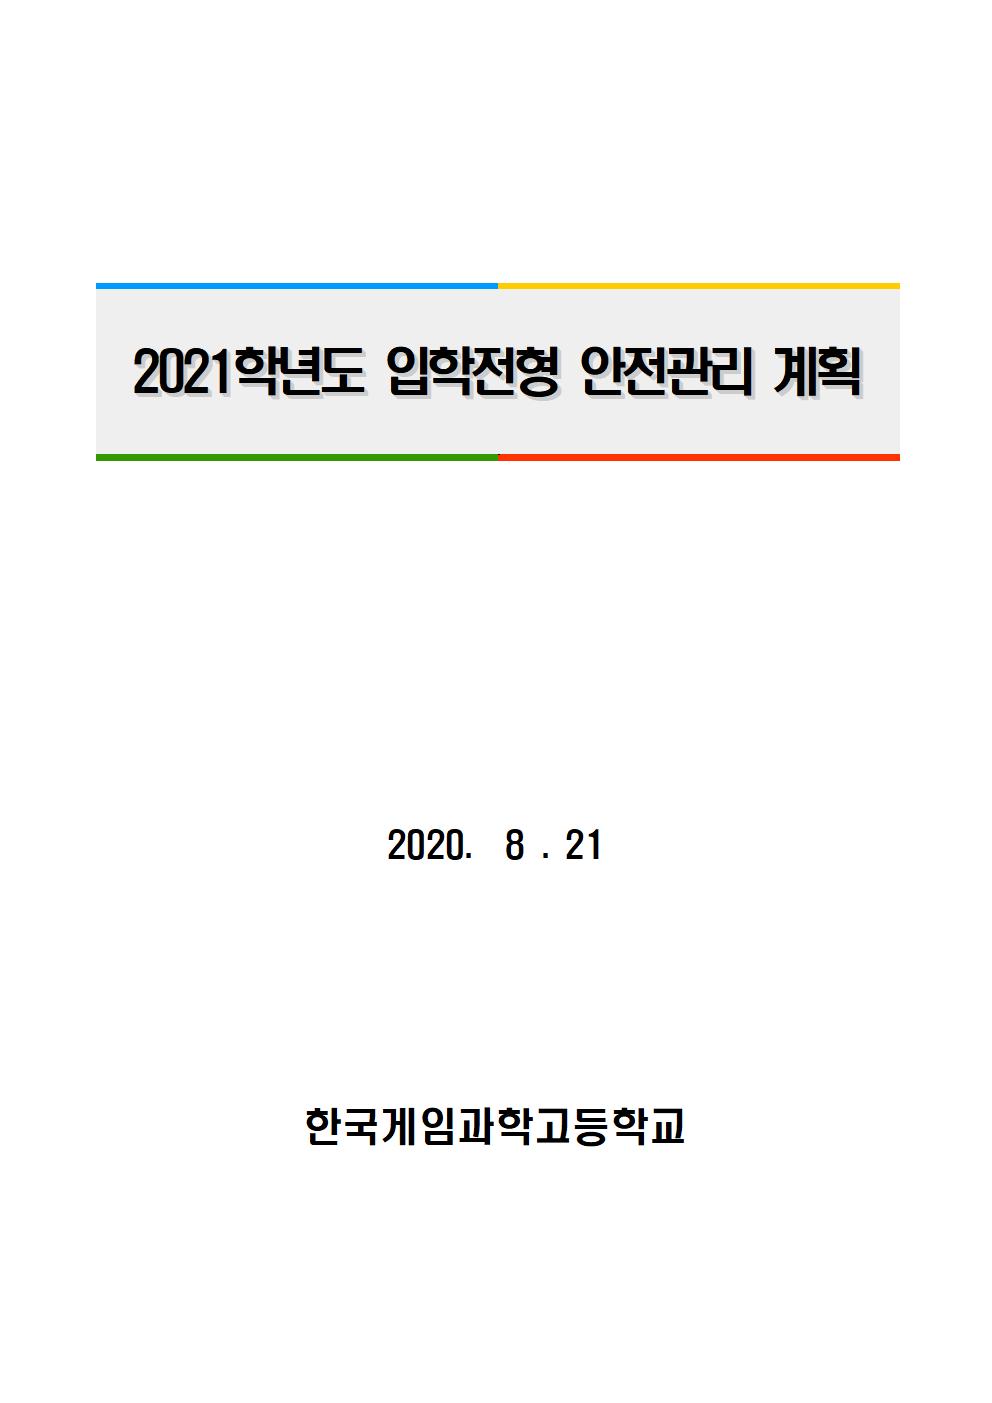 2021학년도 학교별 입학전형 안전관리 계획_한국게임과학고(홈페이지게시)001